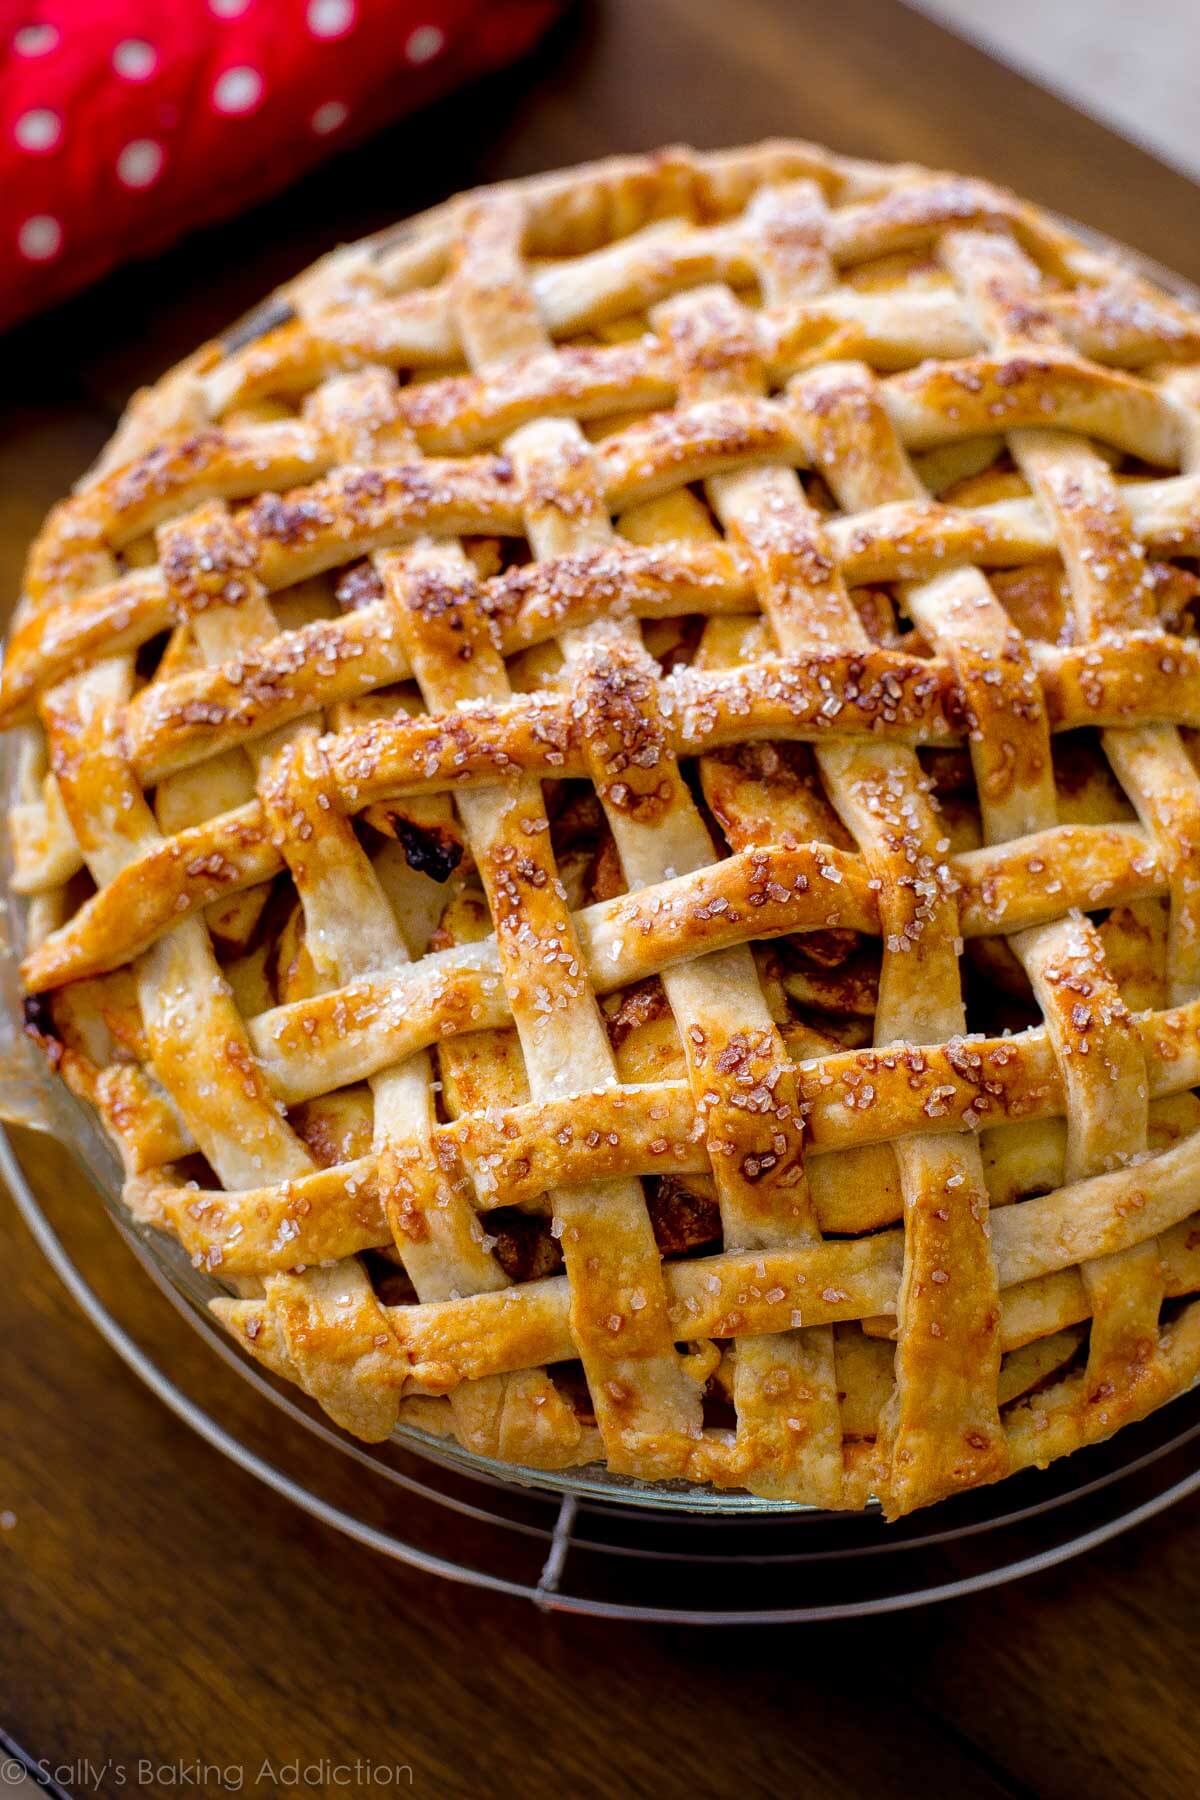 Tarte aux pommes au caramel salé avec croûte de treillis sur sallysbakingaddiction.com